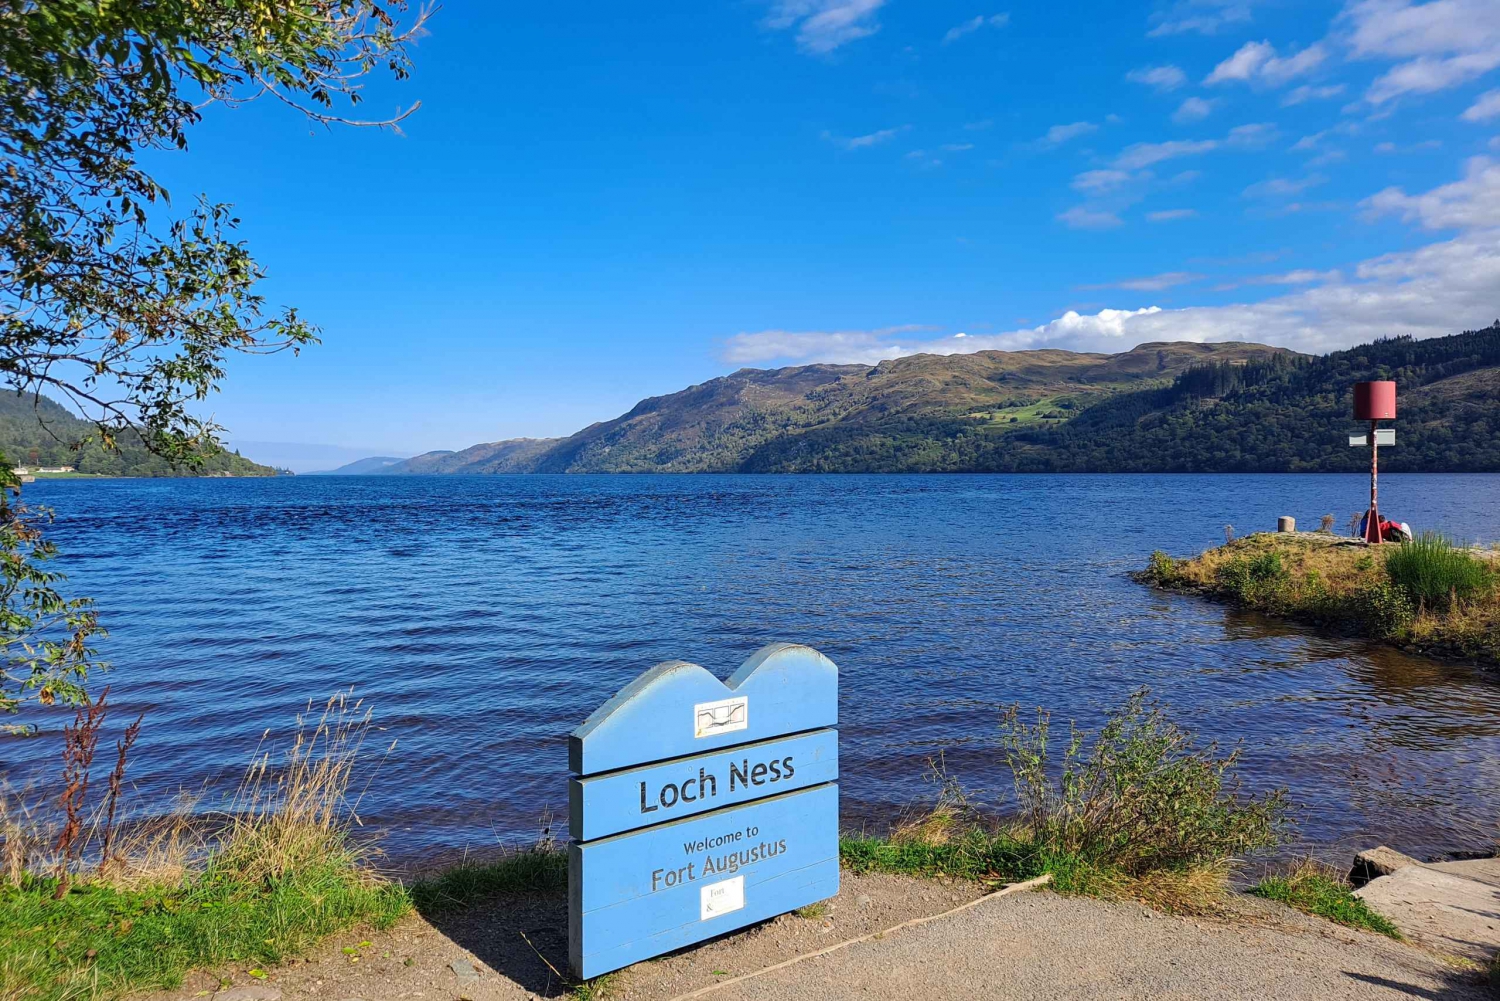 Desde Edimburgo: Tour privado de un día al Lago Ness con traslados